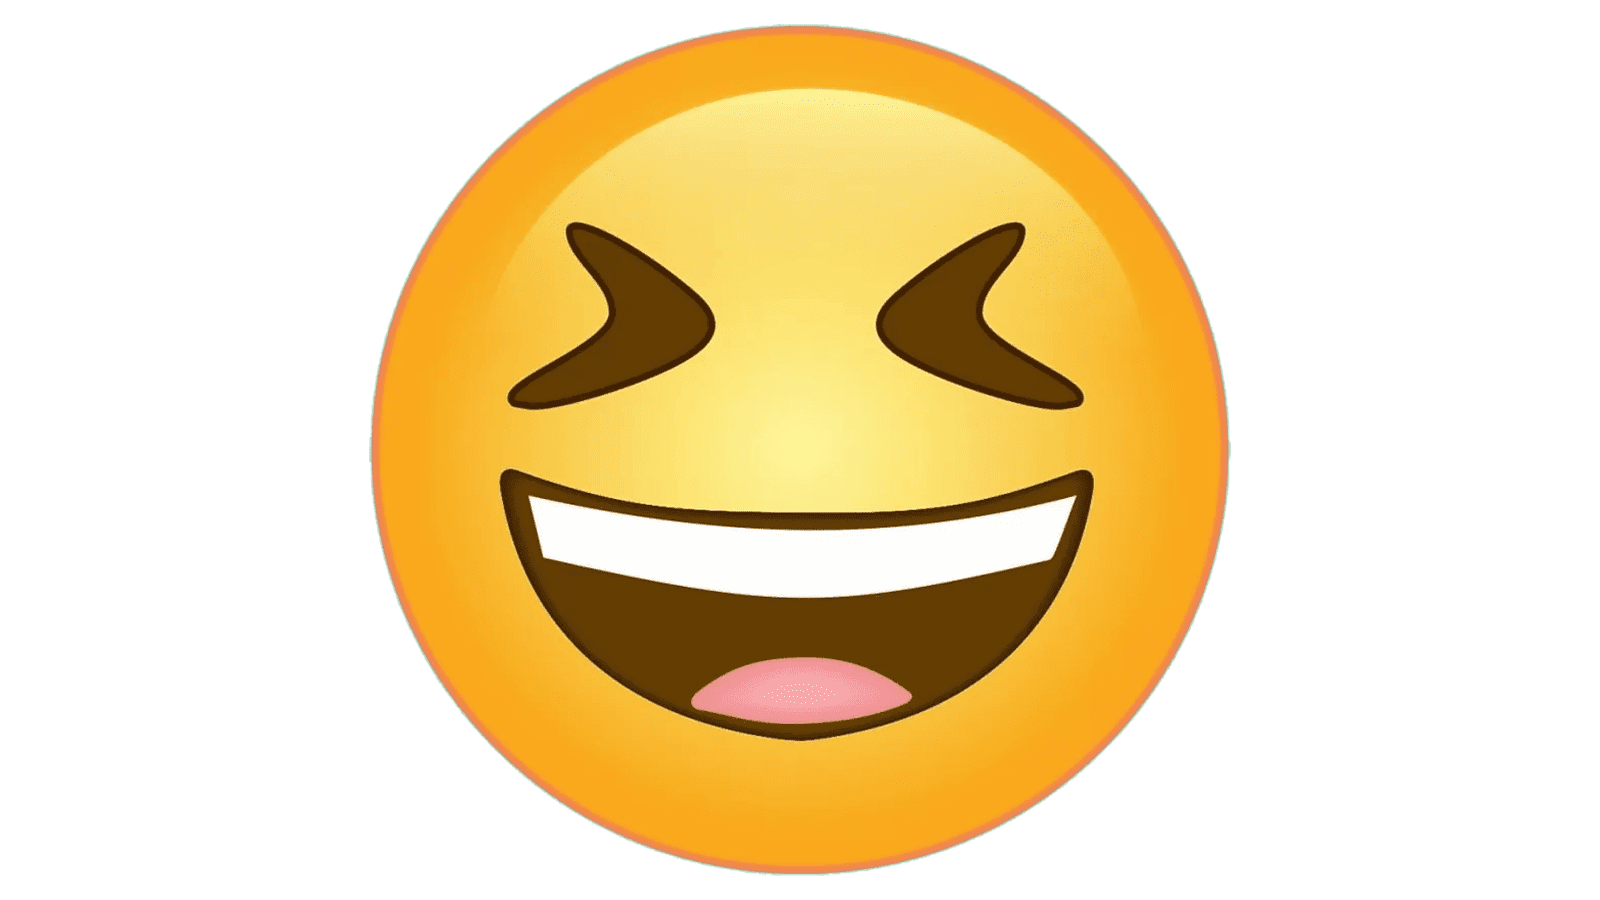 laughing face emoji